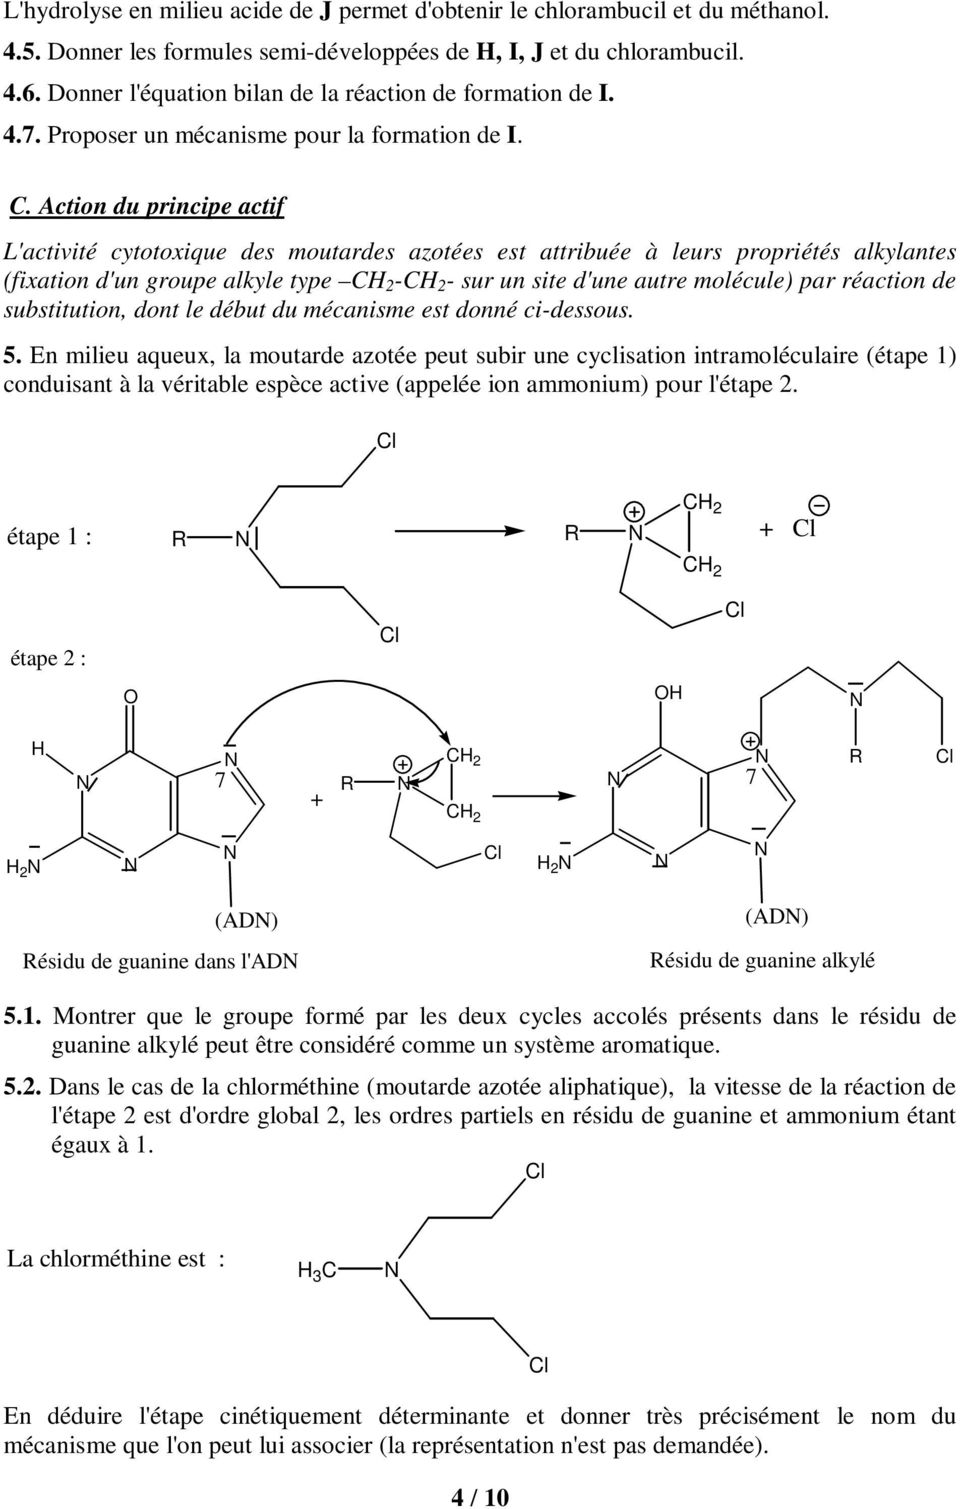 Action du principe actif L'activité cytotoxique des moutardes azotées est attribuée à leurs propriétés alkylantes (fixation d'un groupe alkyle type C 2 -C 2 - sur un site d'une autre molécule) par